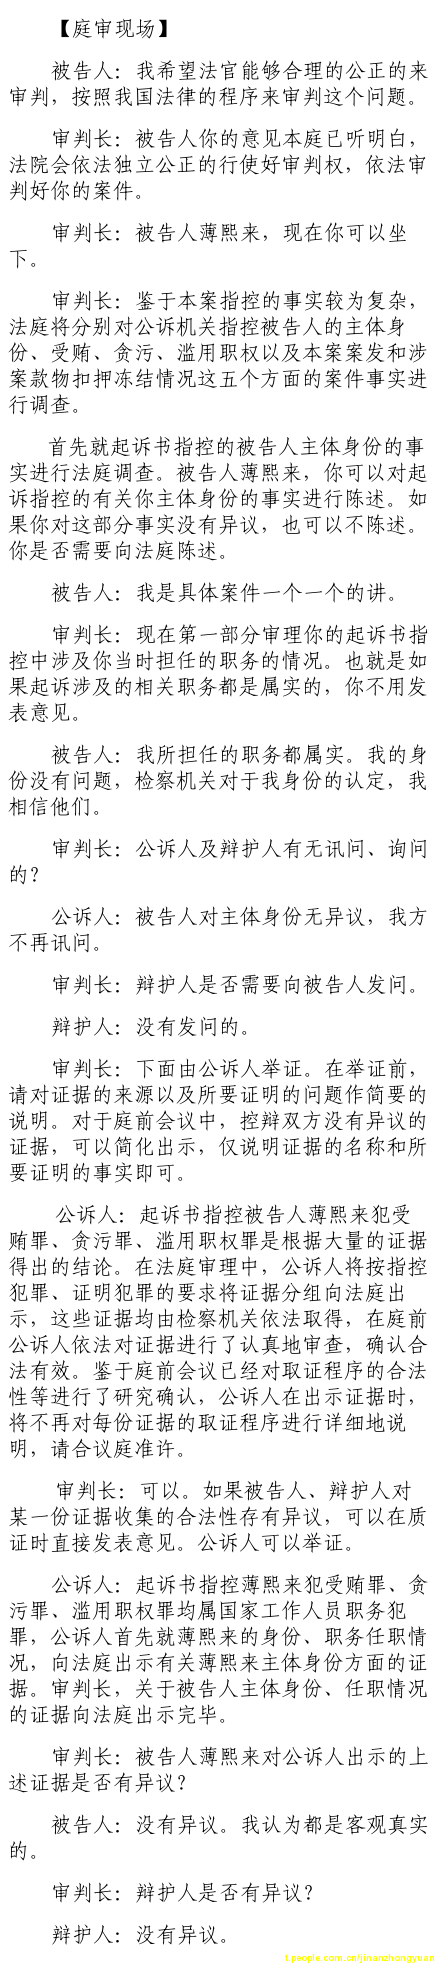 济南市中级法院官方微博公布的8月22日庭审现场记录（1）